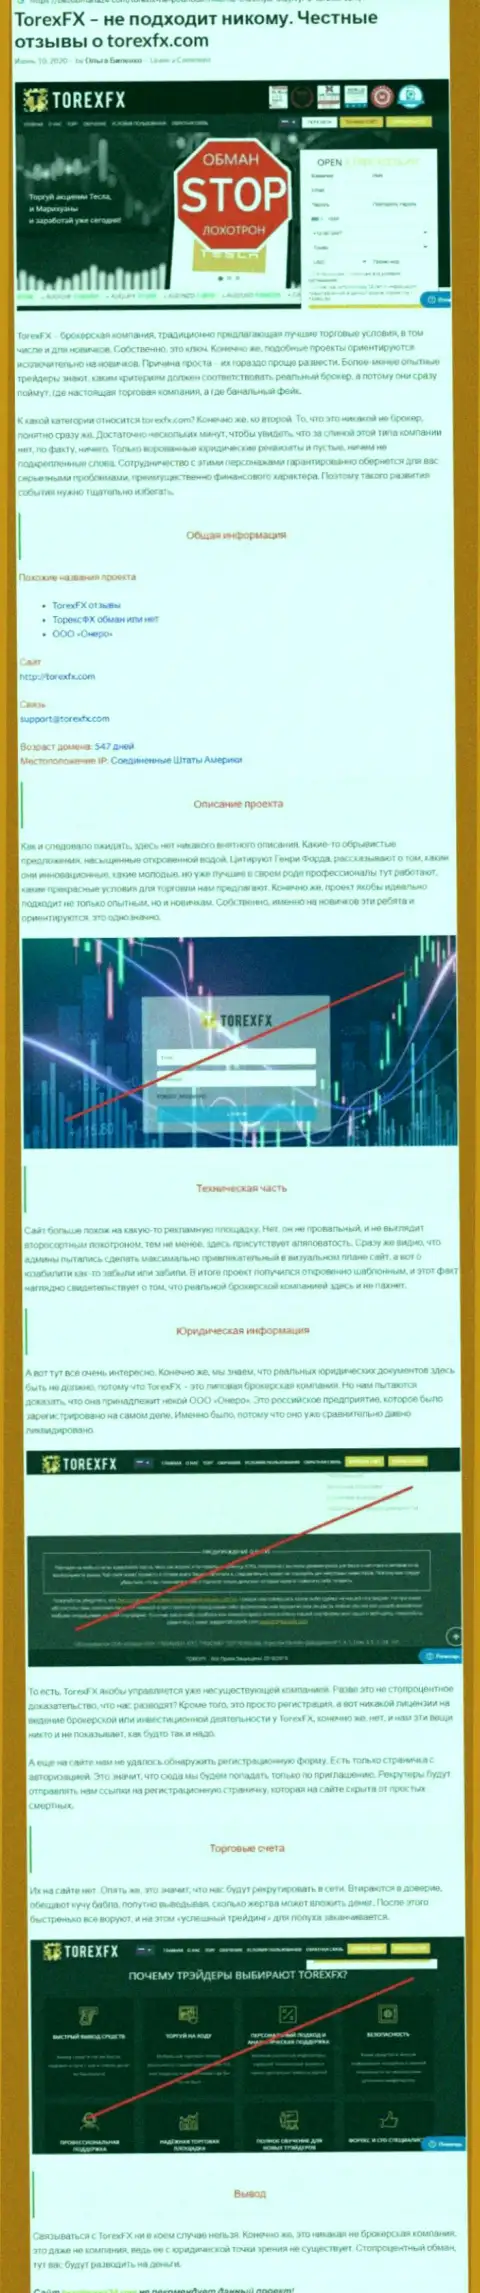 Деньги НЕ ПЕРЕЧИСЛЯЙТЕ !!! В конторе Торекс ФХ разводят и воруют финансовые активы (обзор деяний)